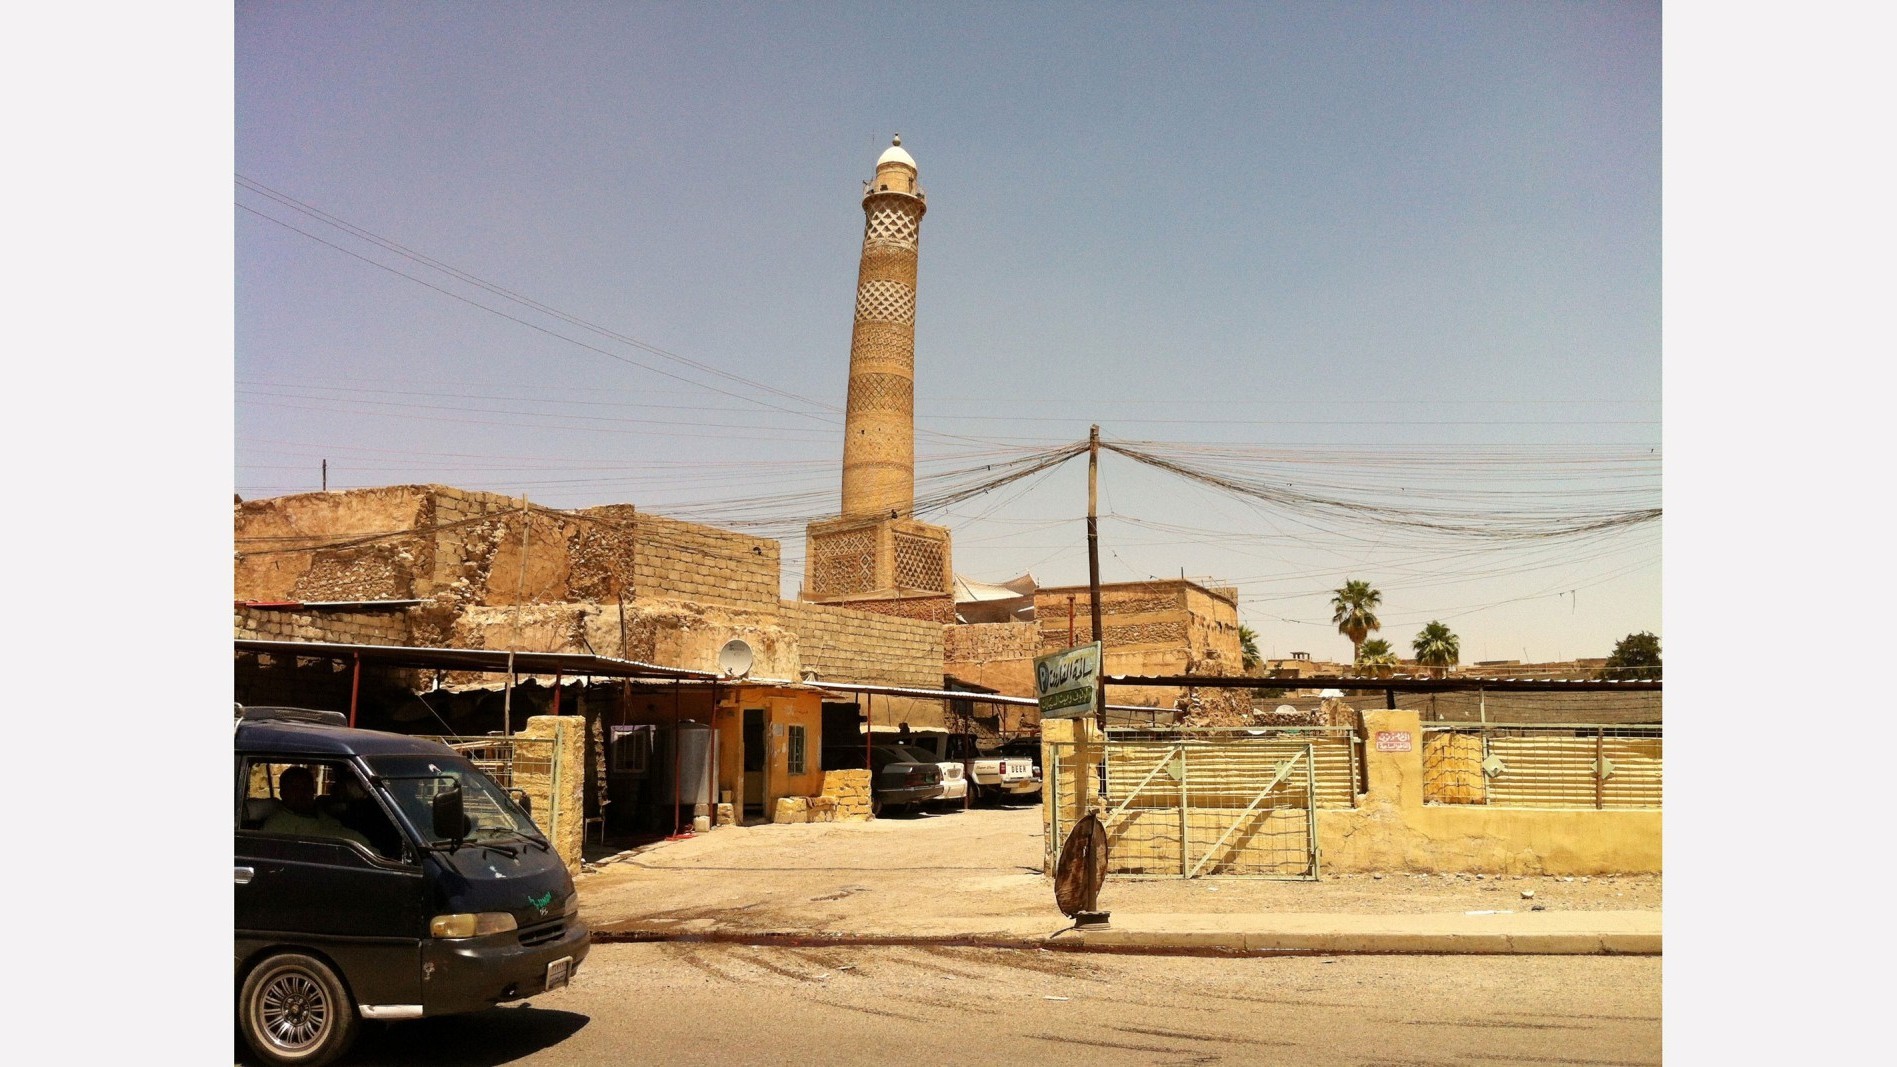 Le minaret de la mosquée An-Nuri en 2013 avant que l'Etat islamique ne tente de le détruire.